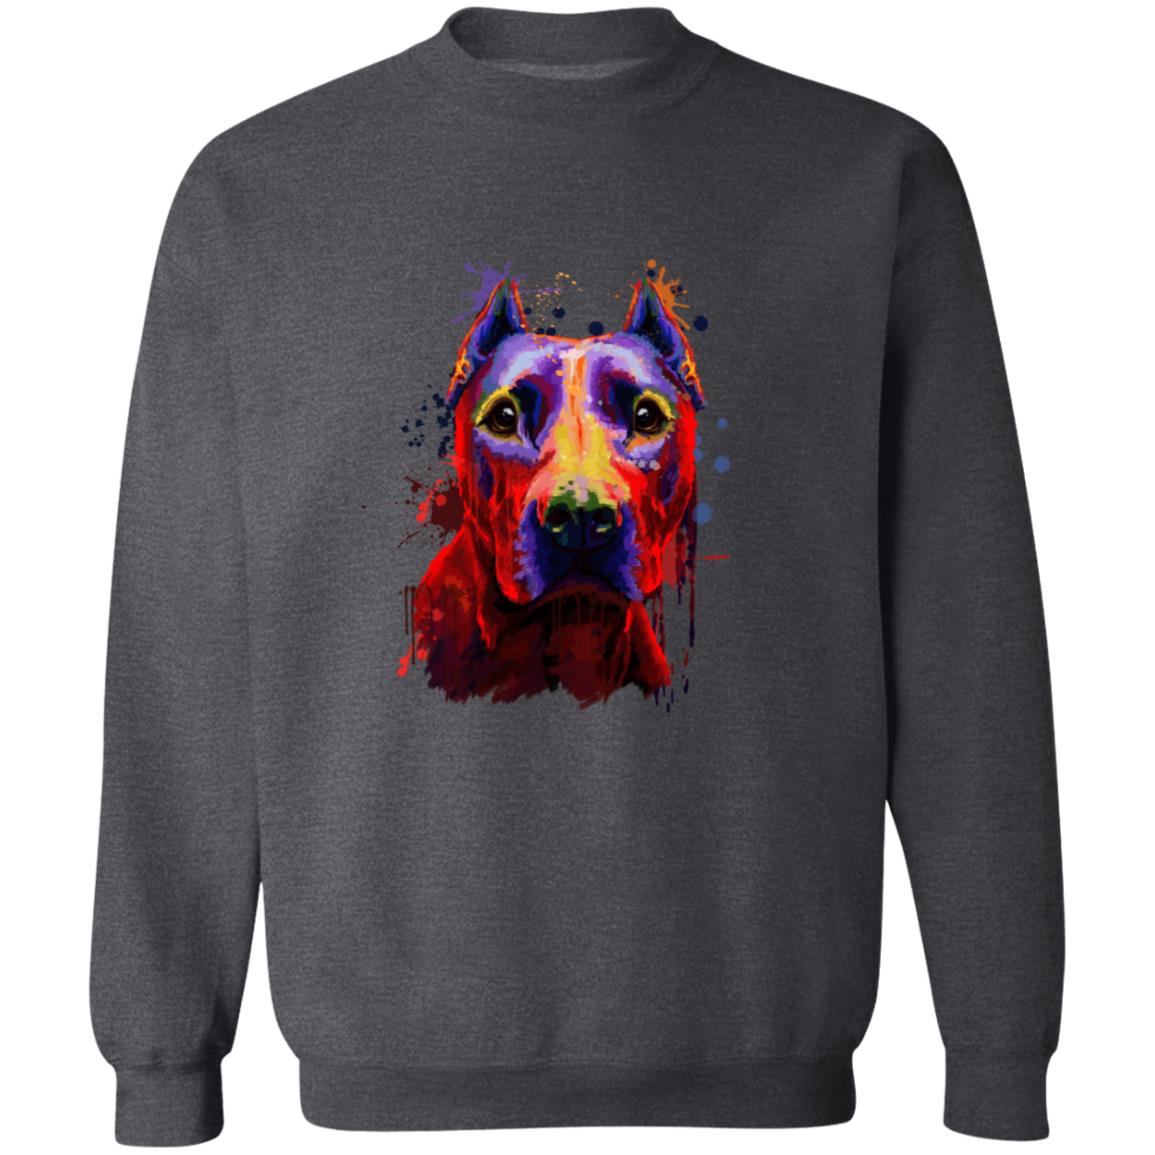 Abstract Pitbul dog Unisex Crewneck Sweatshirt with expressive splashes-Family-Gift-Planet